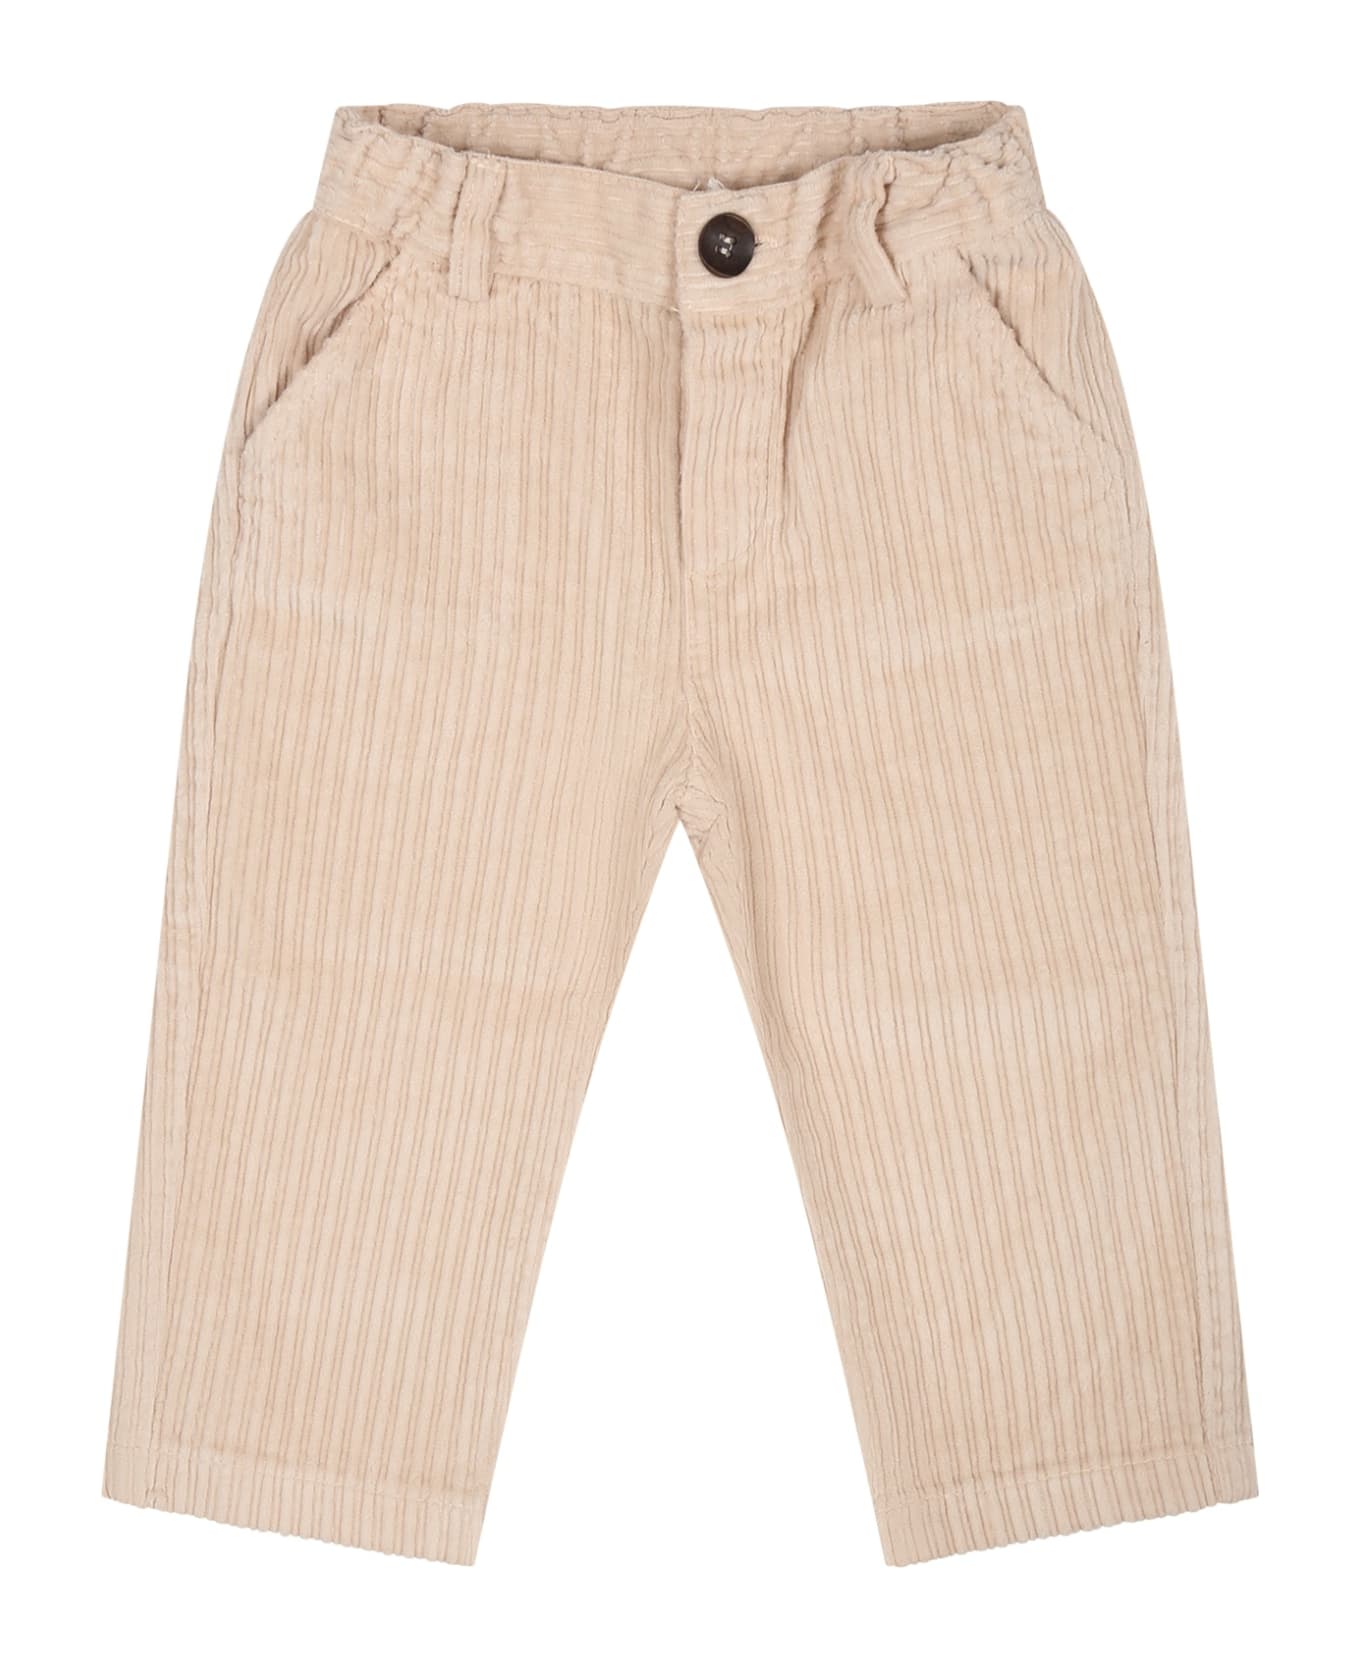 Zhoe & Tobiah Beige Trousers For Baby Boy - Beige